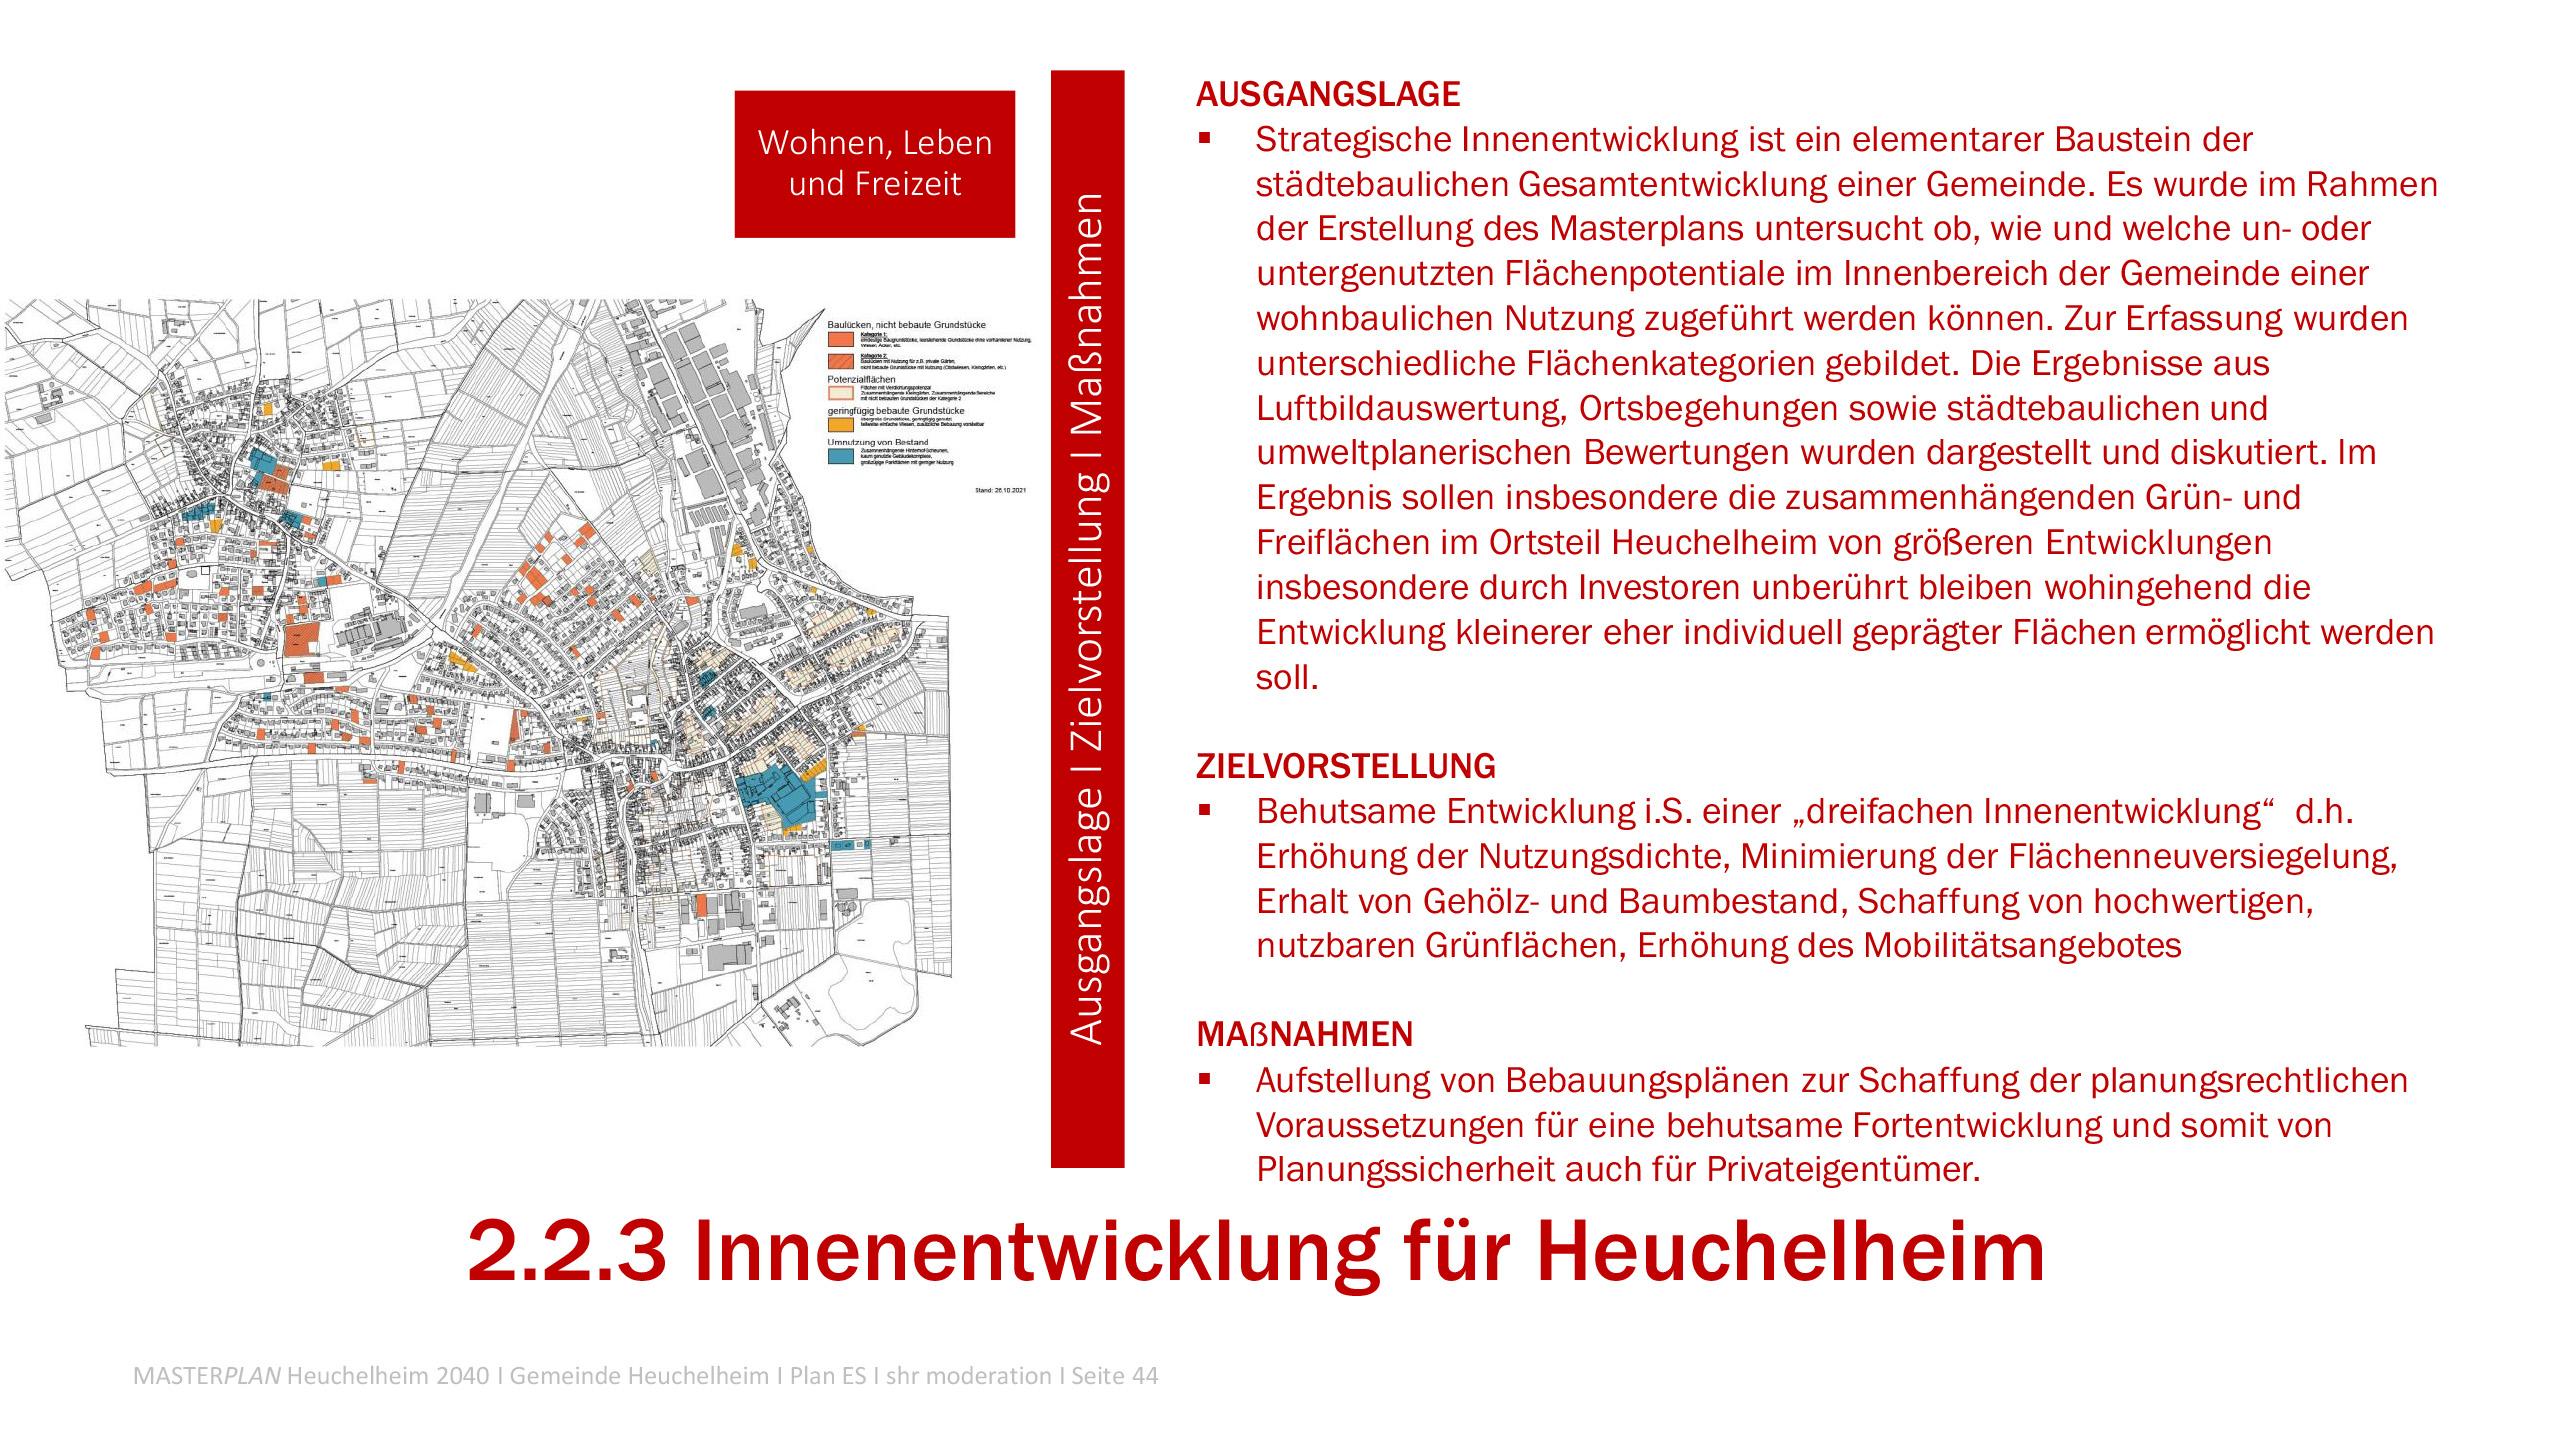 Masterplan Heuchelheim-Aktuelle Projekte-Innenentwicklung für Heuchelheim